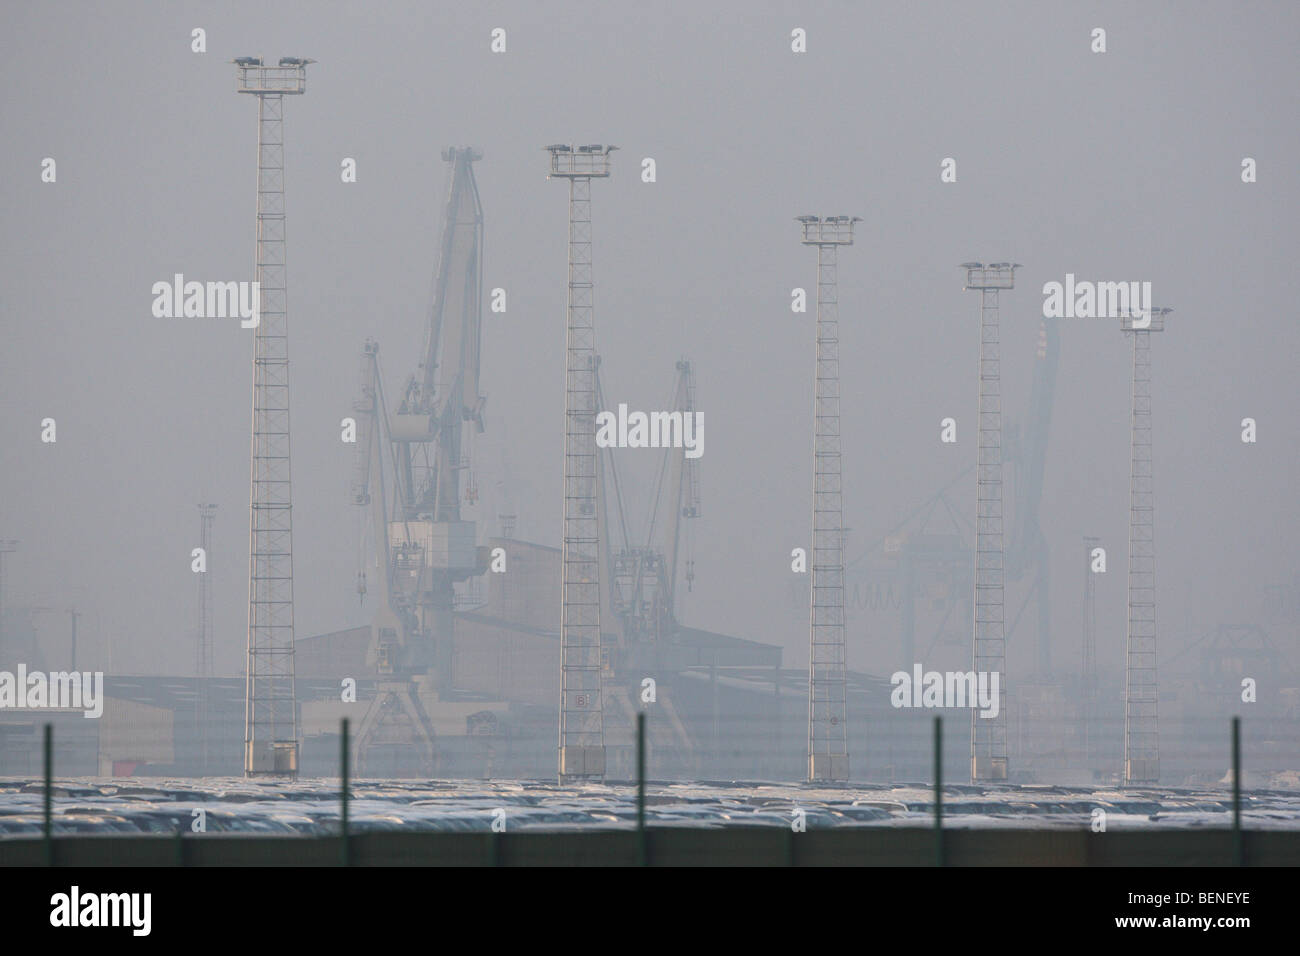 Polen im Gewerbegebiet, Hafen von Zeebrugge, Belgien Stockfoto